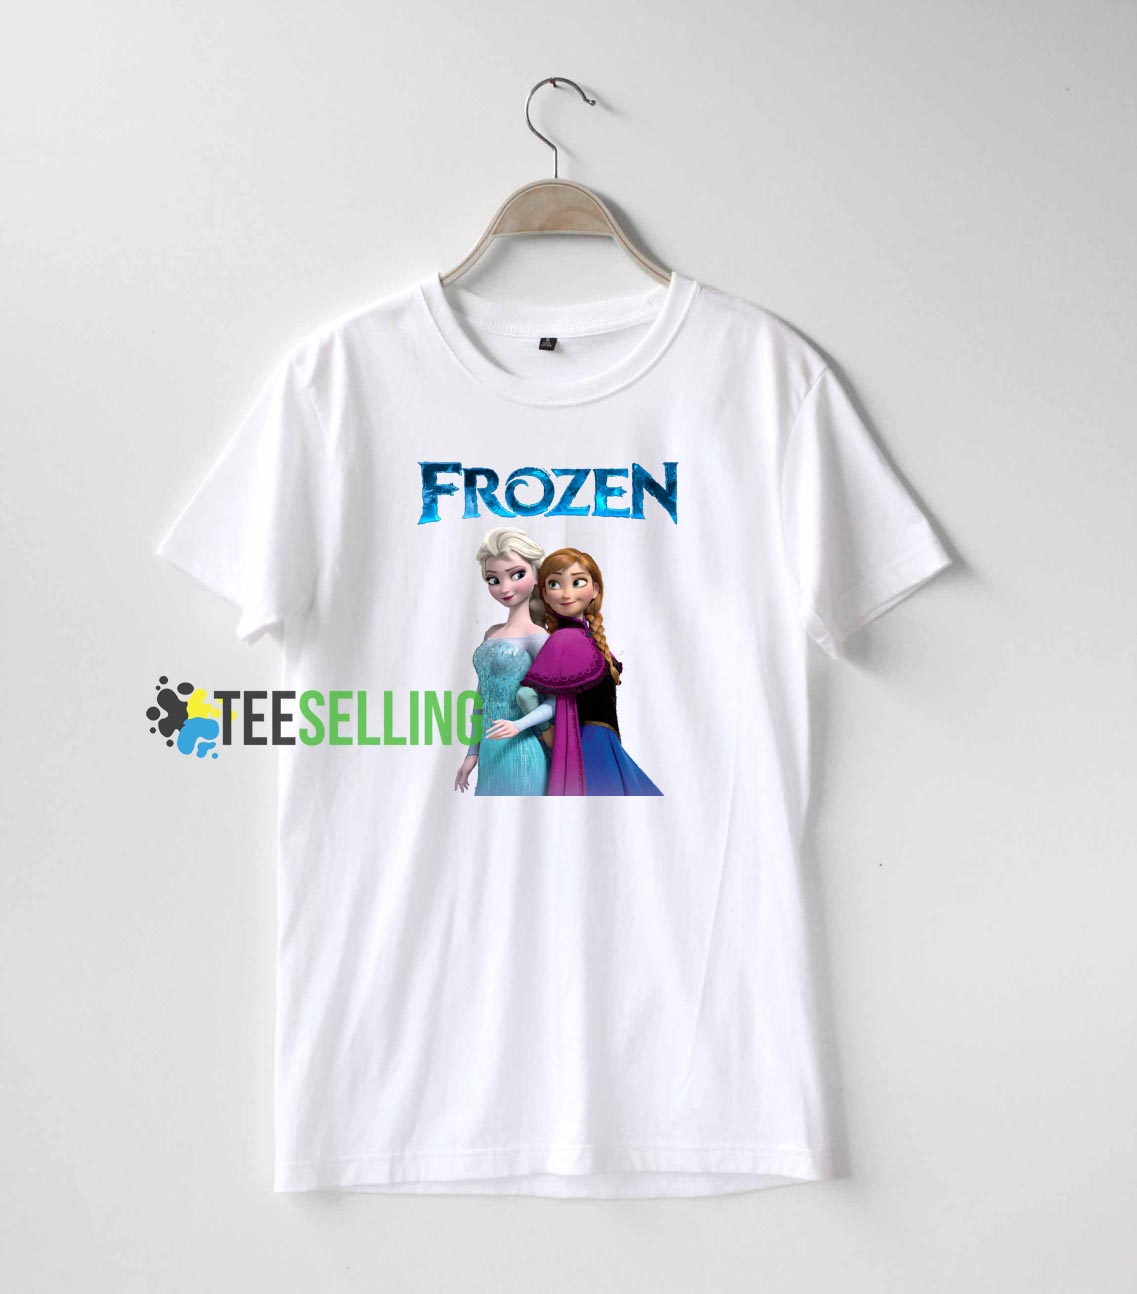 full sleeve t shirts online flipkart